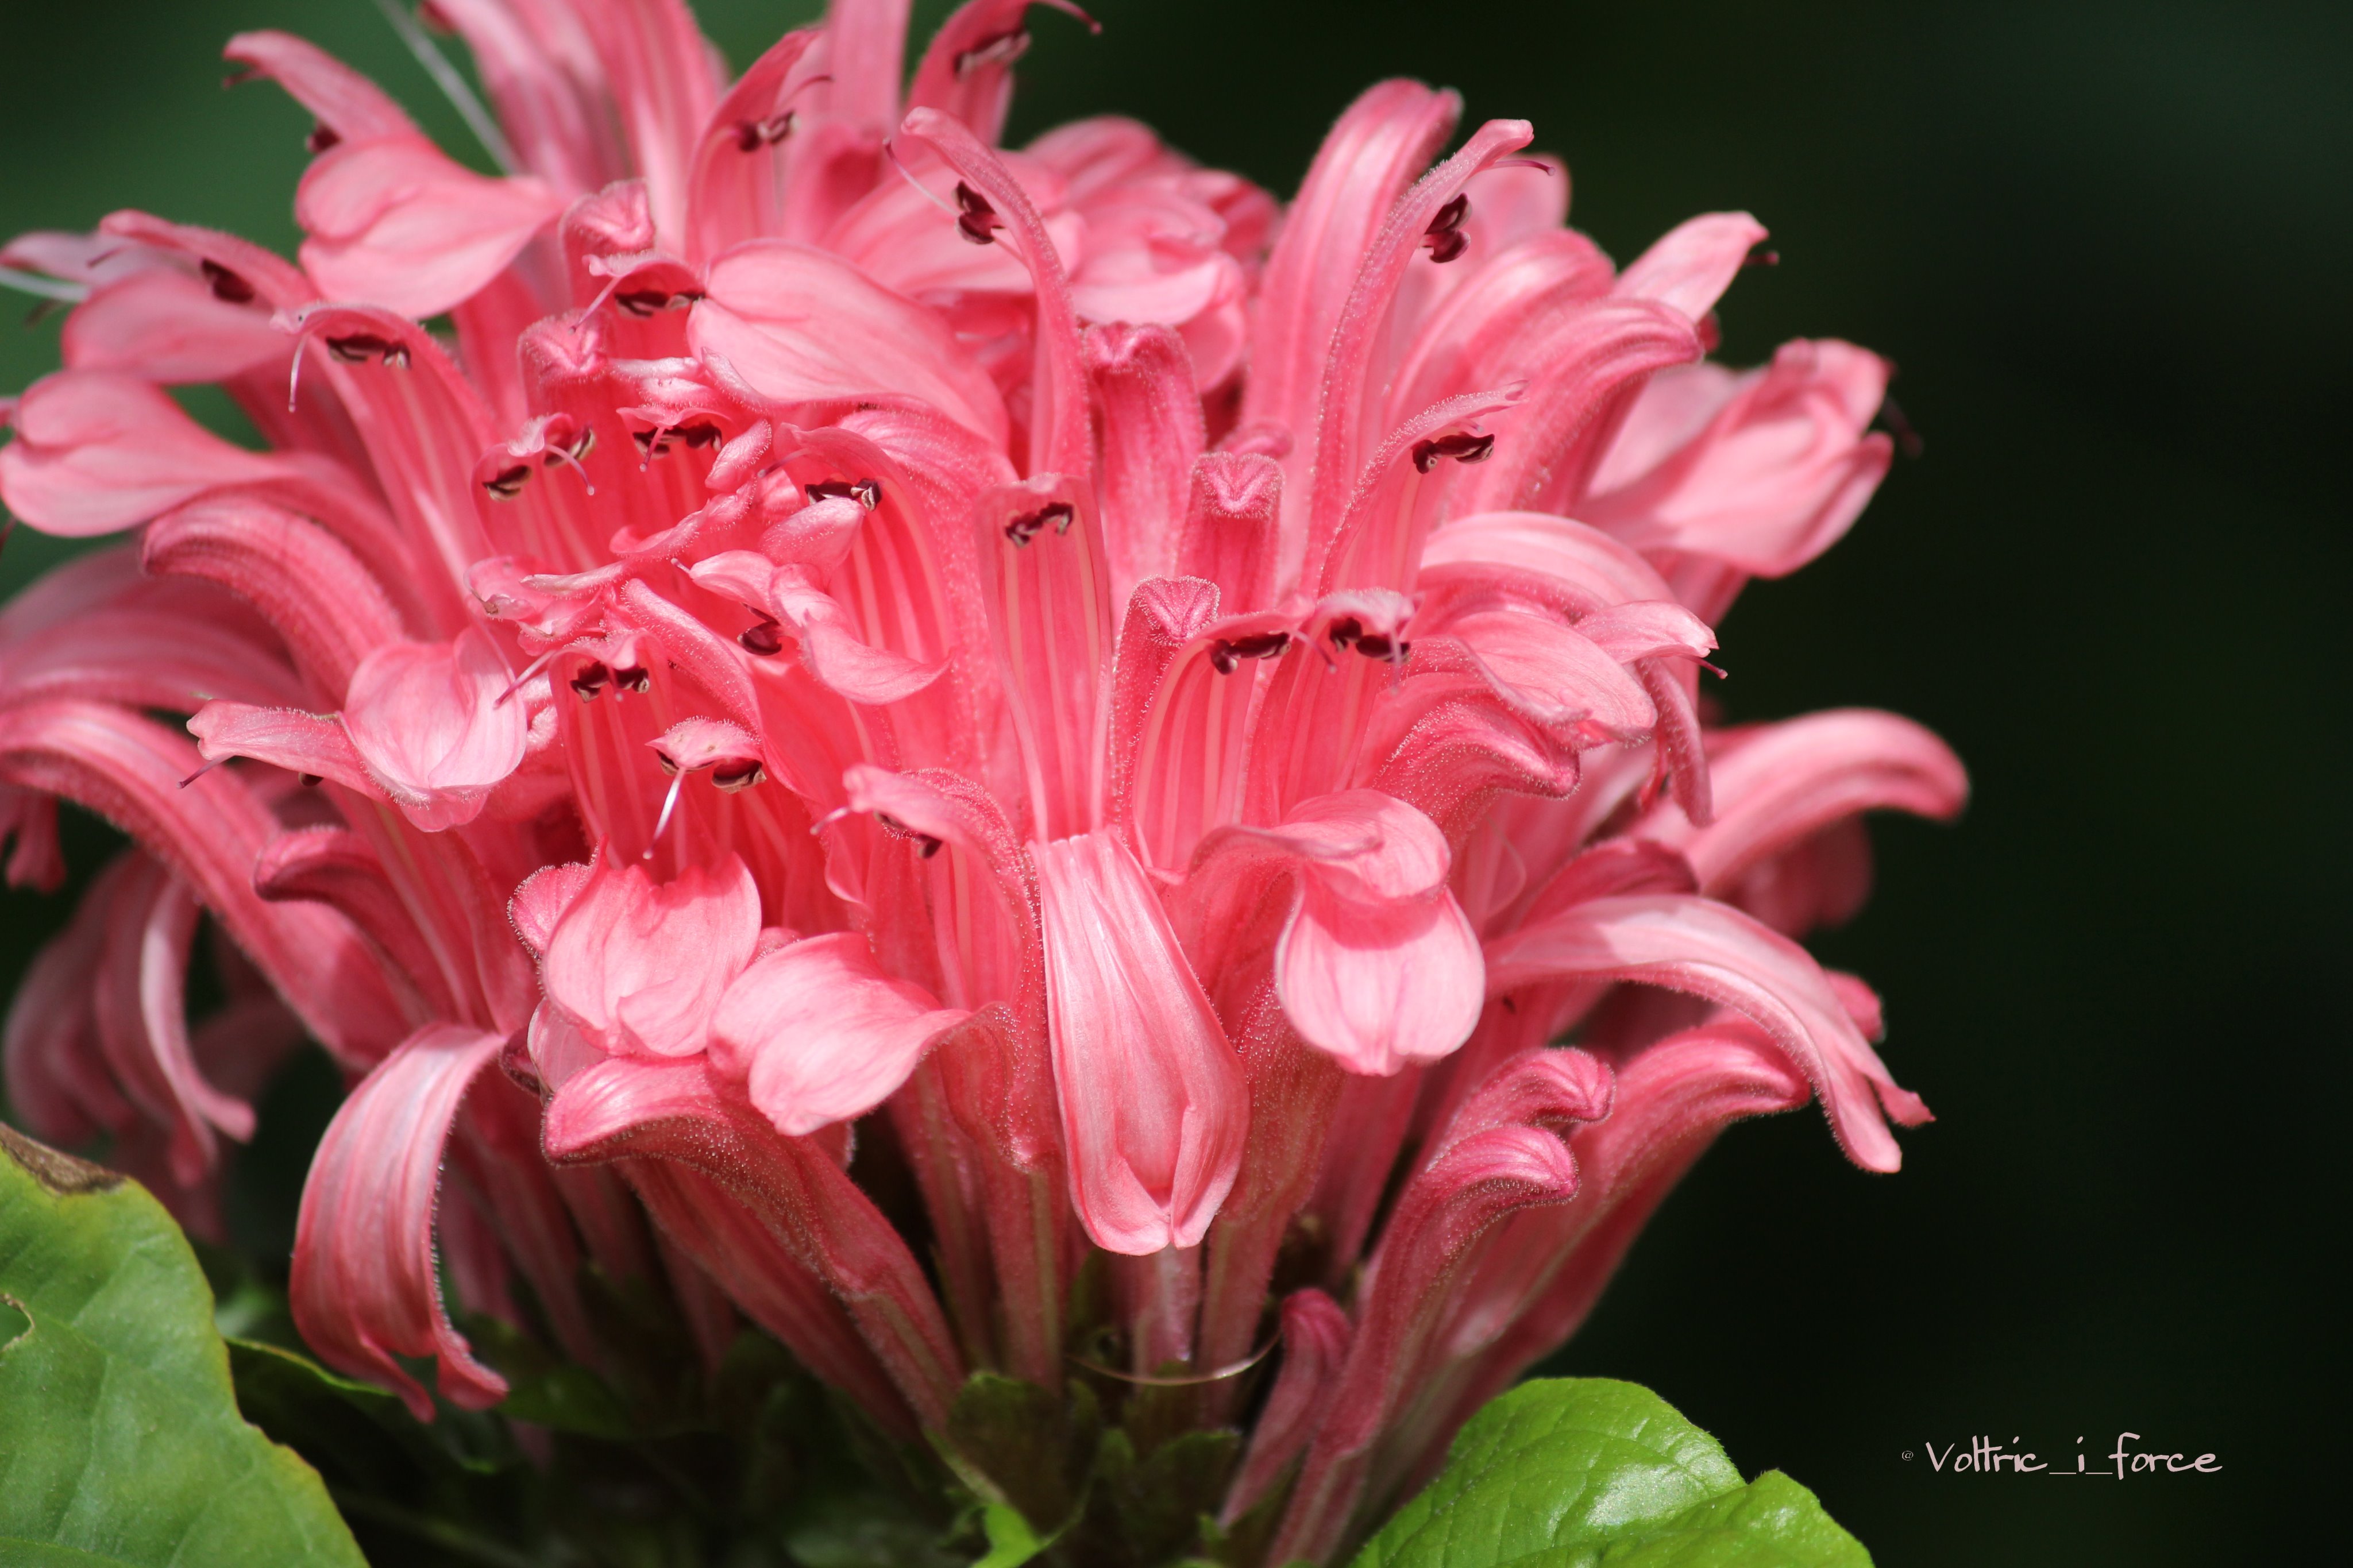 Vtifカスタマイズ 珊瑚花 サンゴバナ 別名 ジャコビニアです 9月12日撮影 年に二回の誕生花の日 やはりupしときましょ 2月15日 誕生花の一つ 珊瑚花 ジャコビニア 花言葉 華やかな恋 繊細な想い 揺れる心 熱意 煌き 女性美の極致 T Co